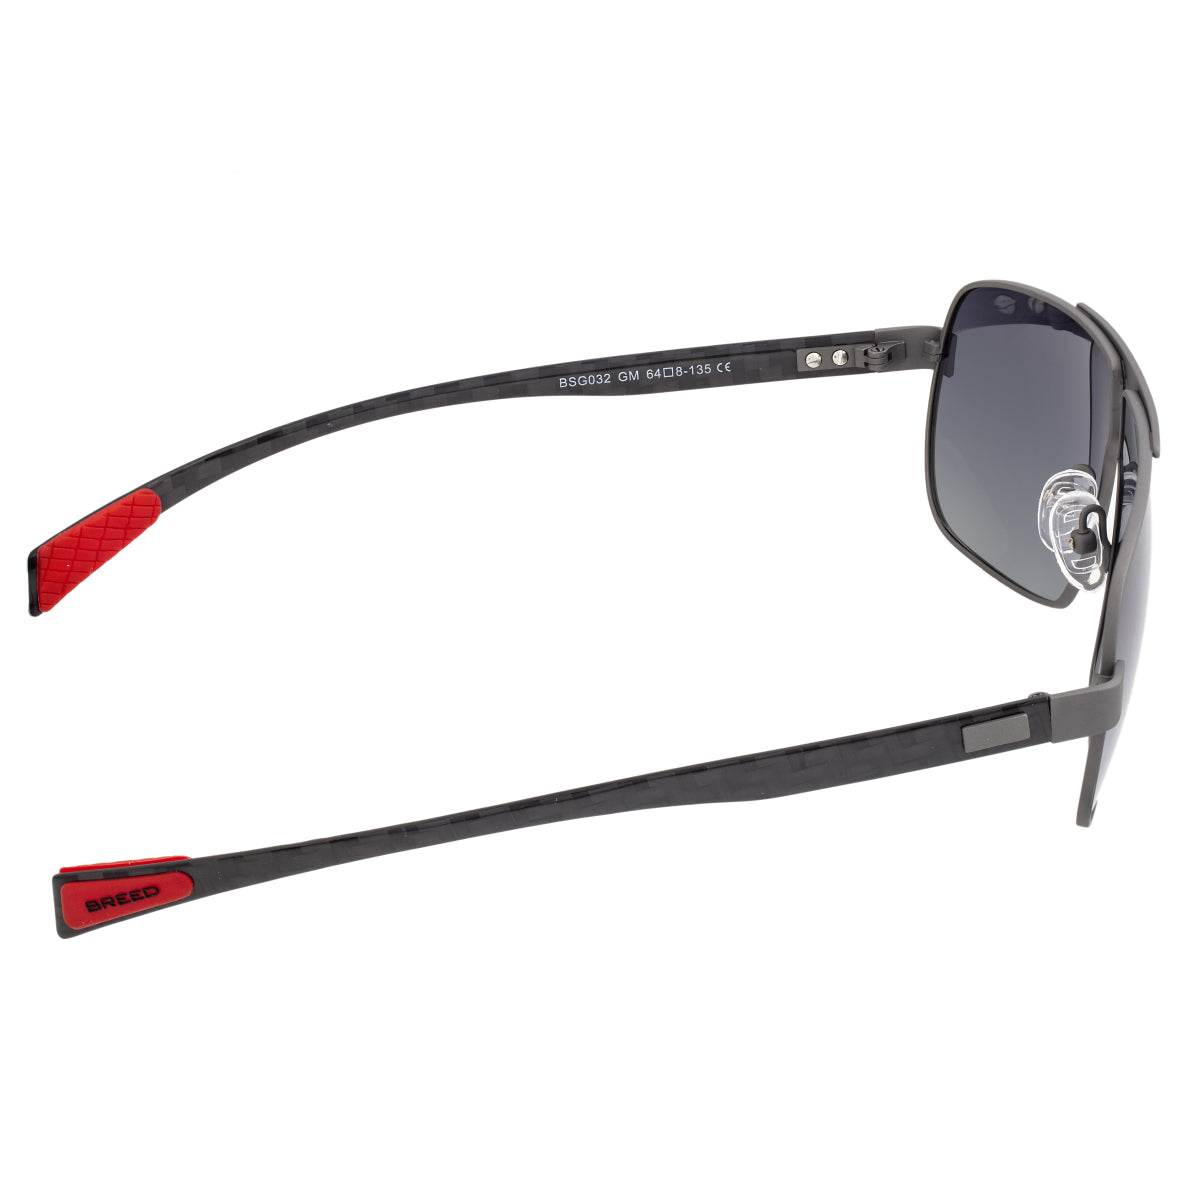 Breed Sagittarius Titanium Polarized Sunglasses - Gunmetal/Black - BSG032GM